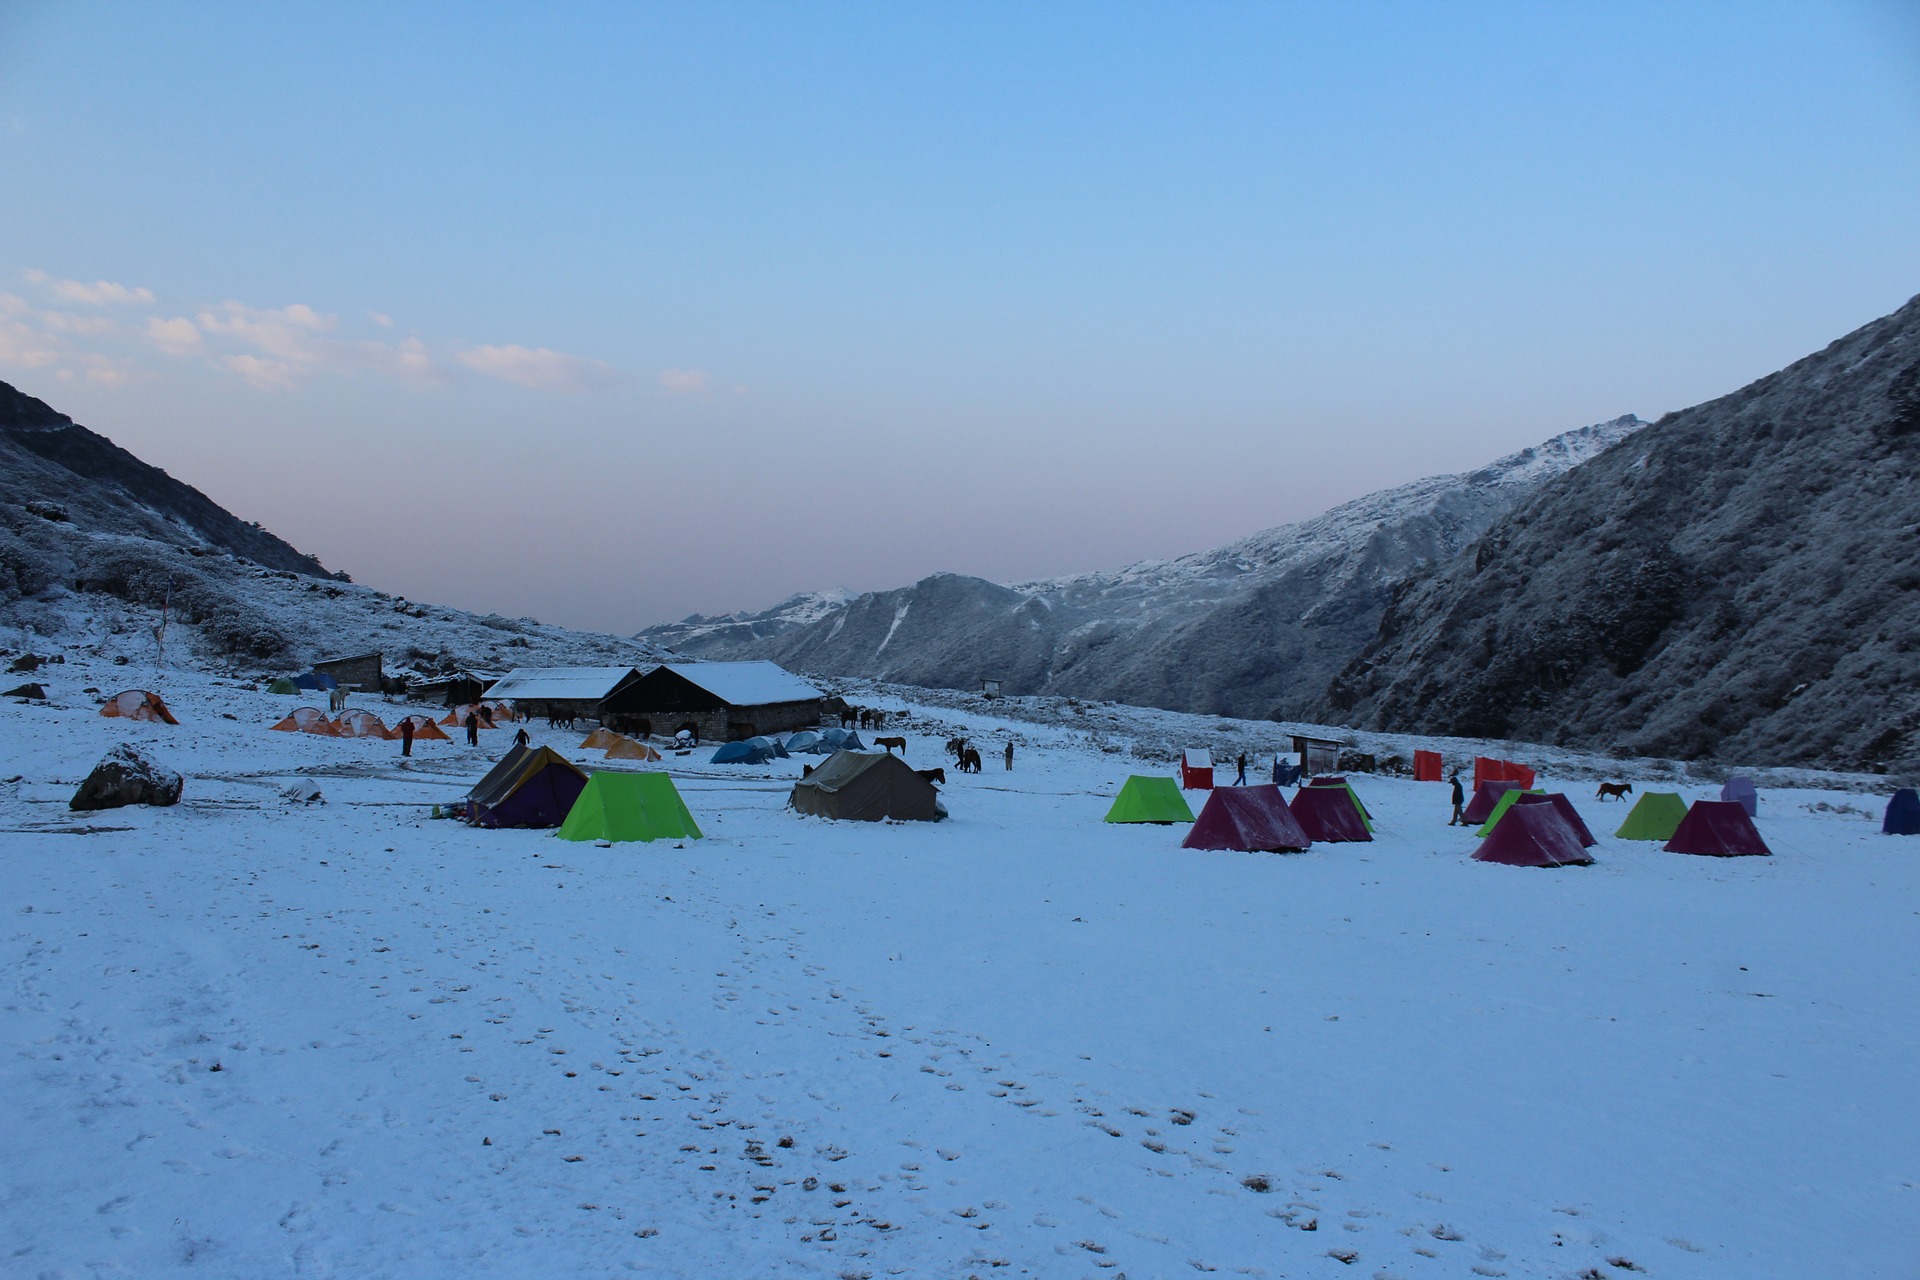 Accommodation in Kanchenjunga Trek